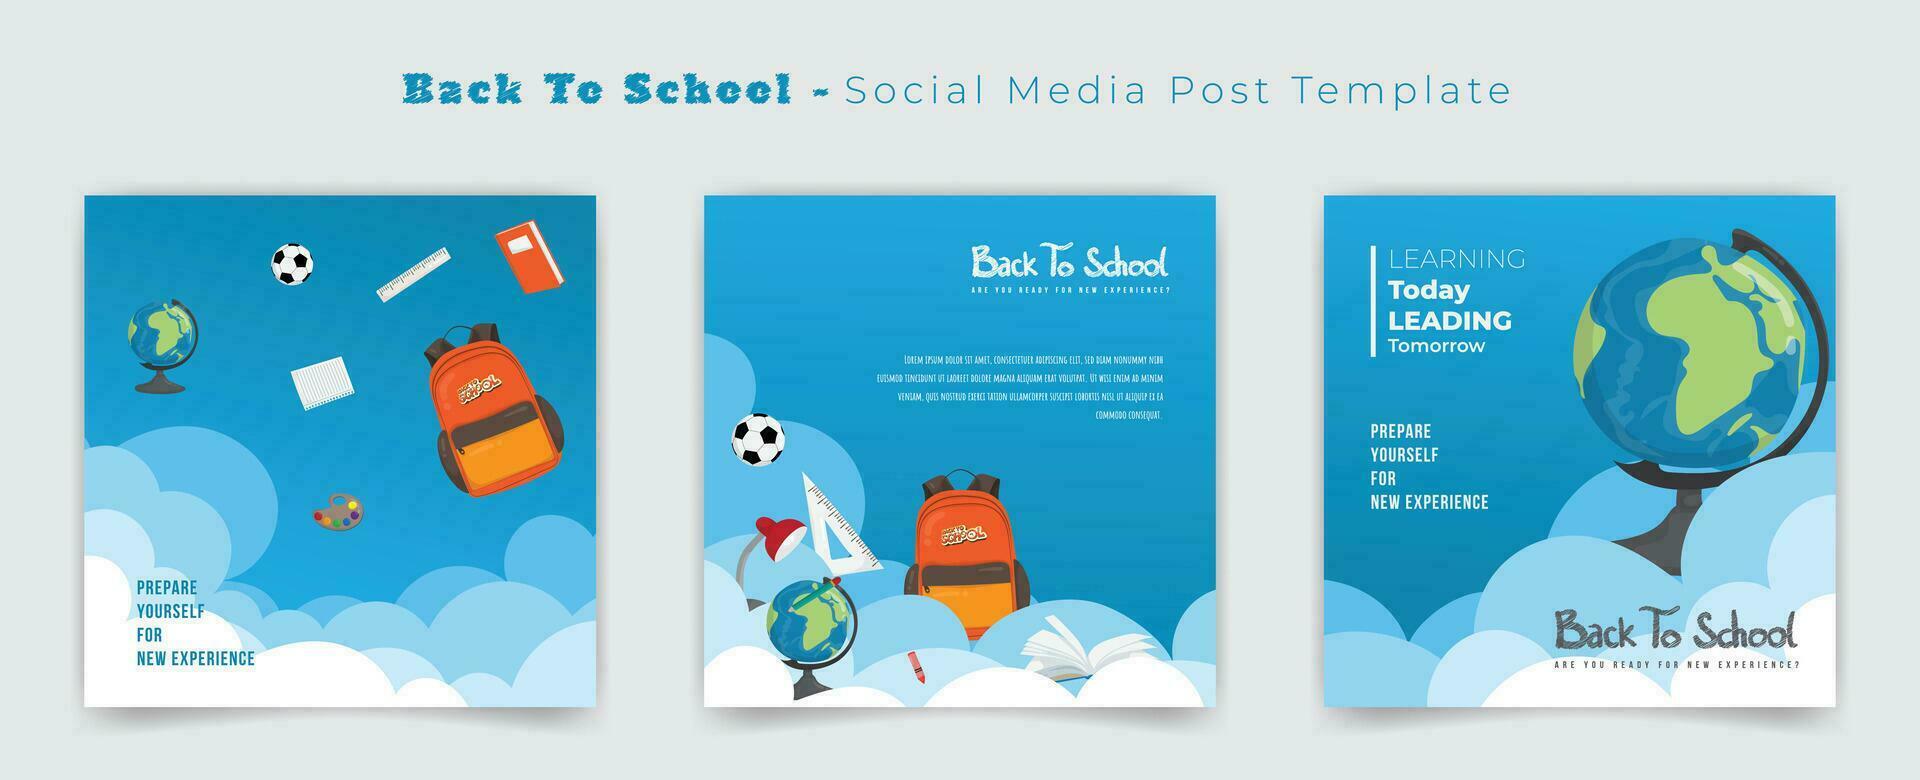 reeks van sociaal media post sjabloon voor terug naar school- met wolk achtergrond ontwerp vector